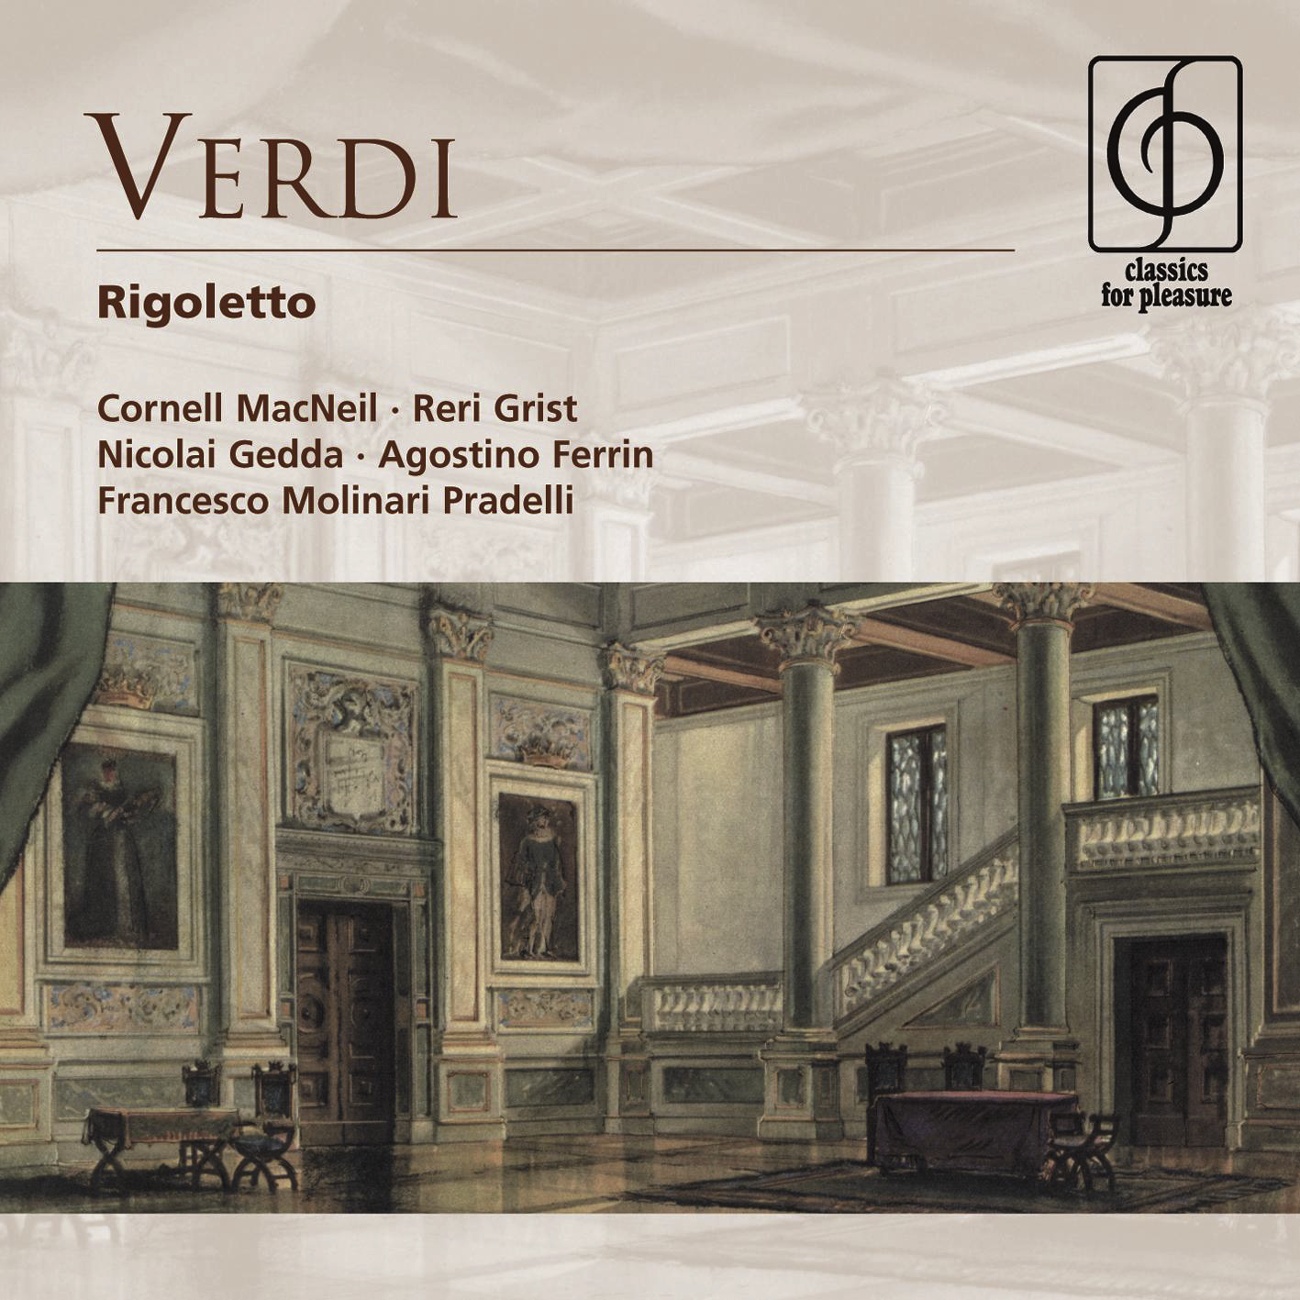 Rigoletto Act I 1988 Digital Remaster: Gualtier Malde... Caro nome Gilda, Borsa, Ceprano, Courtiers, Marullo